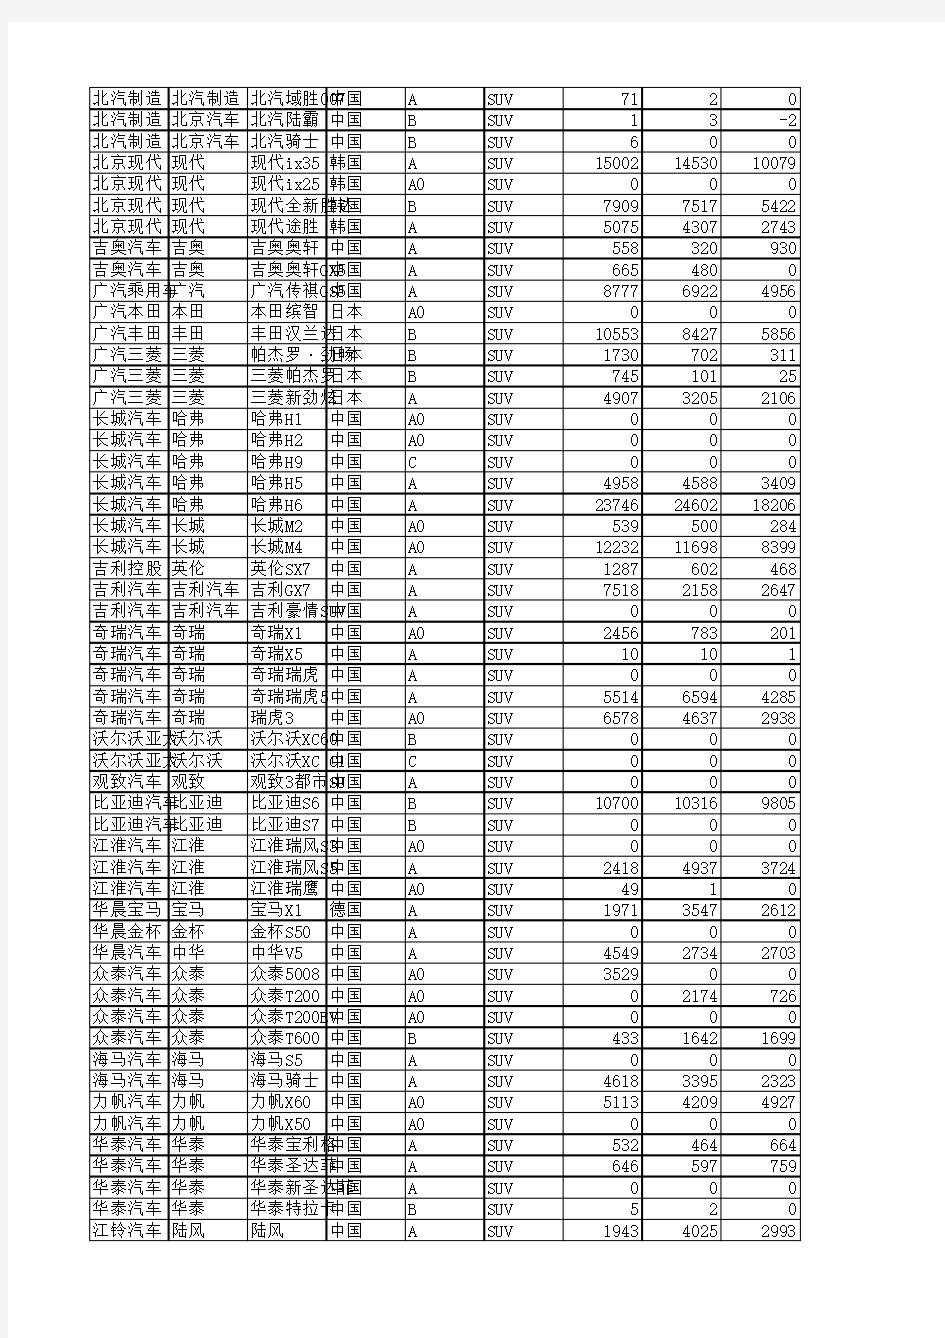 2014年1-12月SUV全国汽车品牌销量明细(中汽协数据)